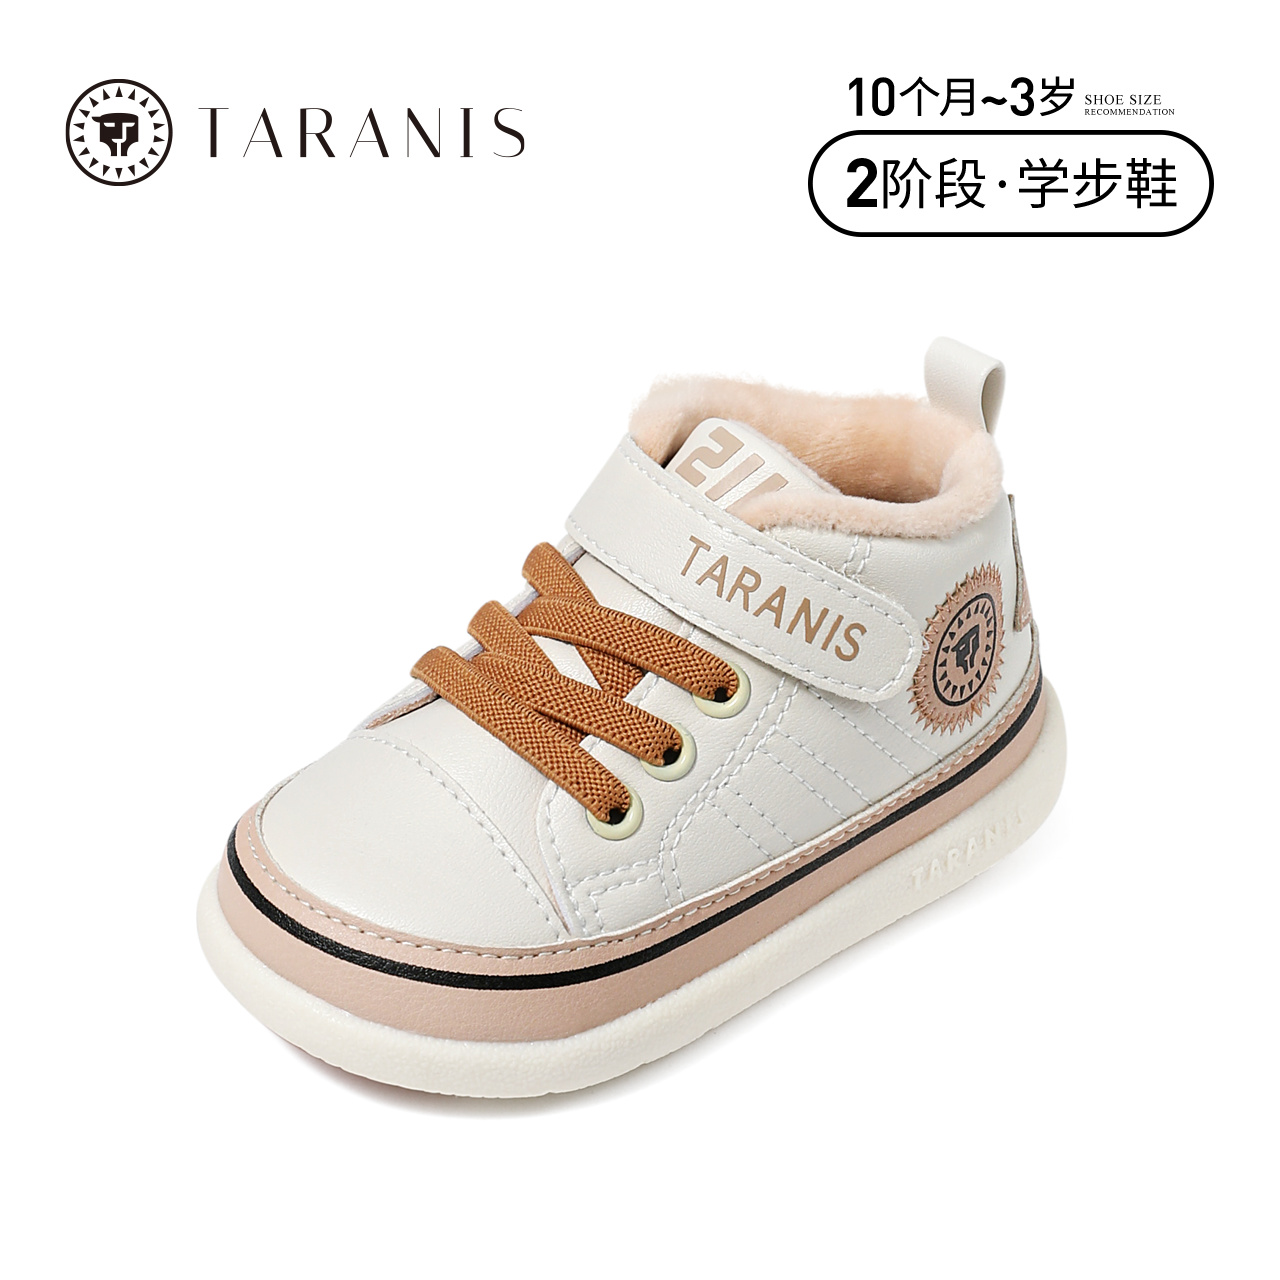 泰兰尼斯211冬季新款男童鞋婴儿学步鞋软底保暖女宝宝鞋加绒鞋子多图1